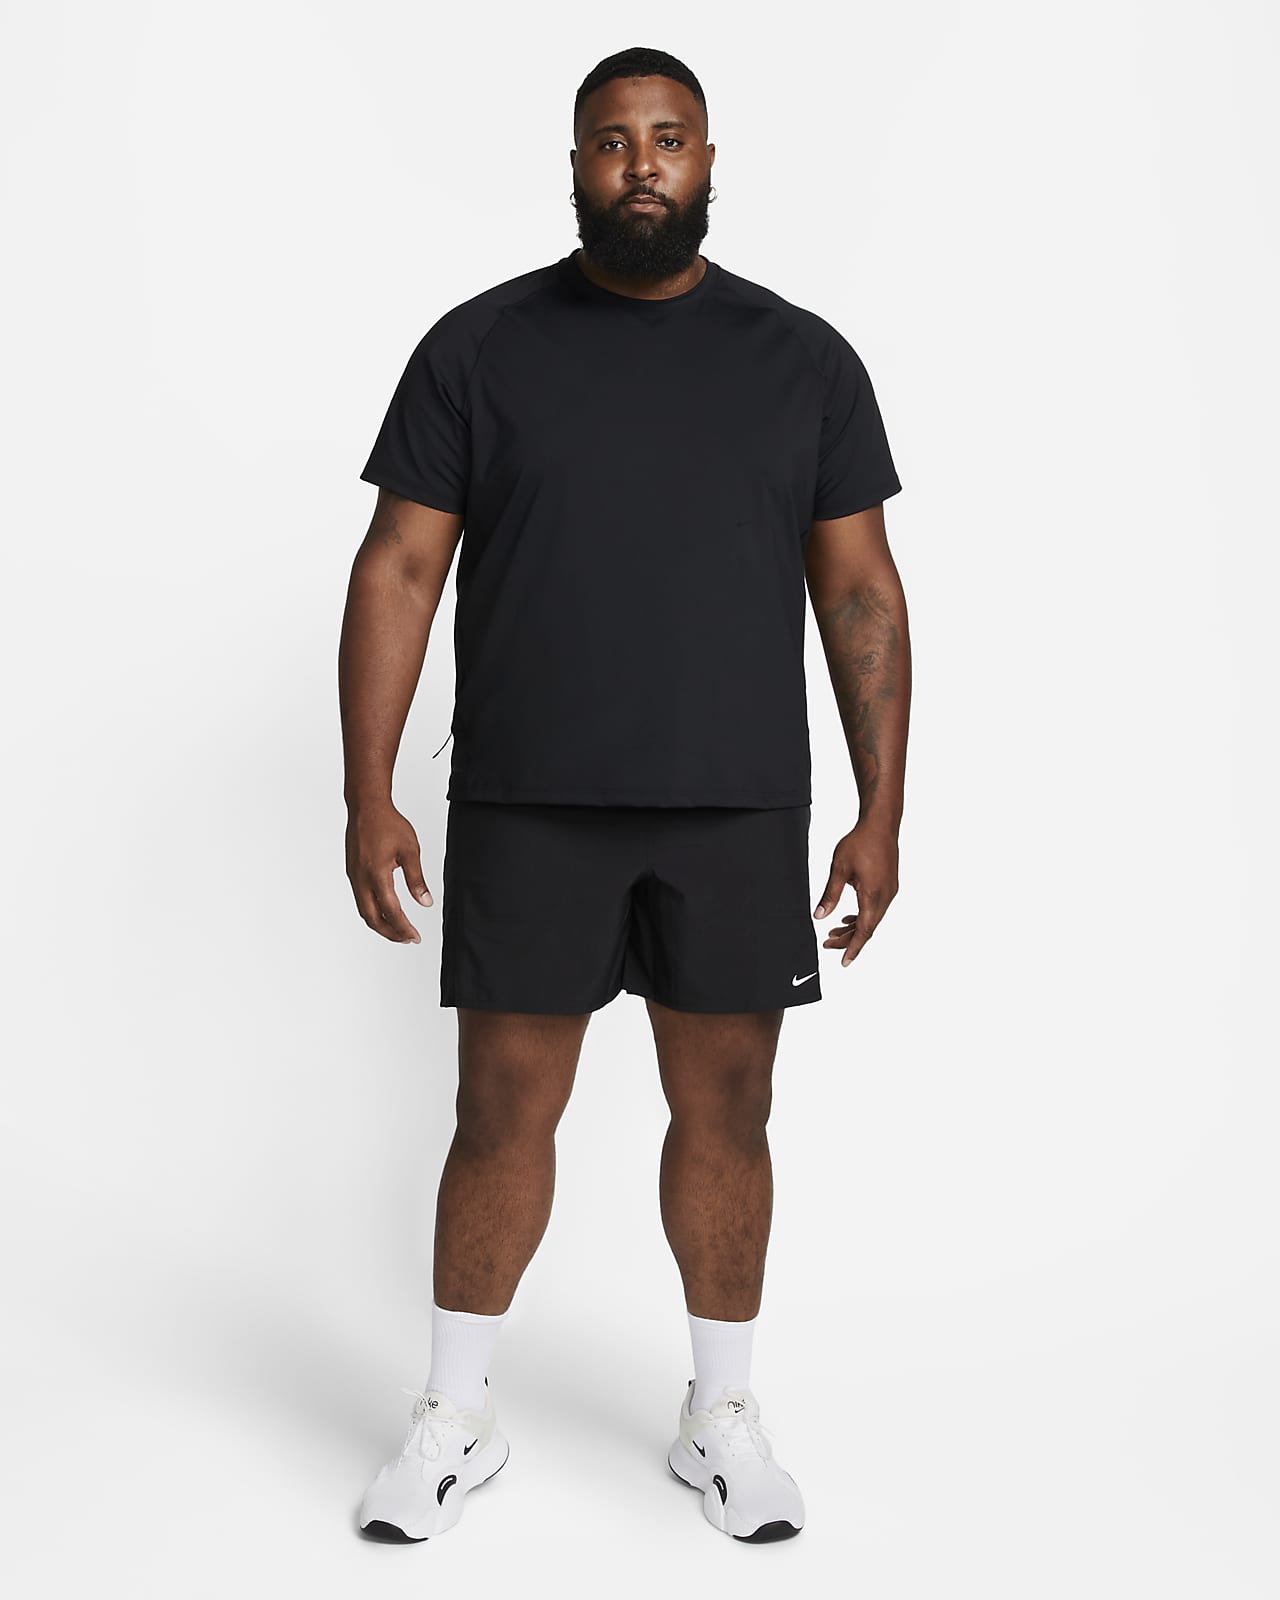 Nike Running power short tights in black 856890-010